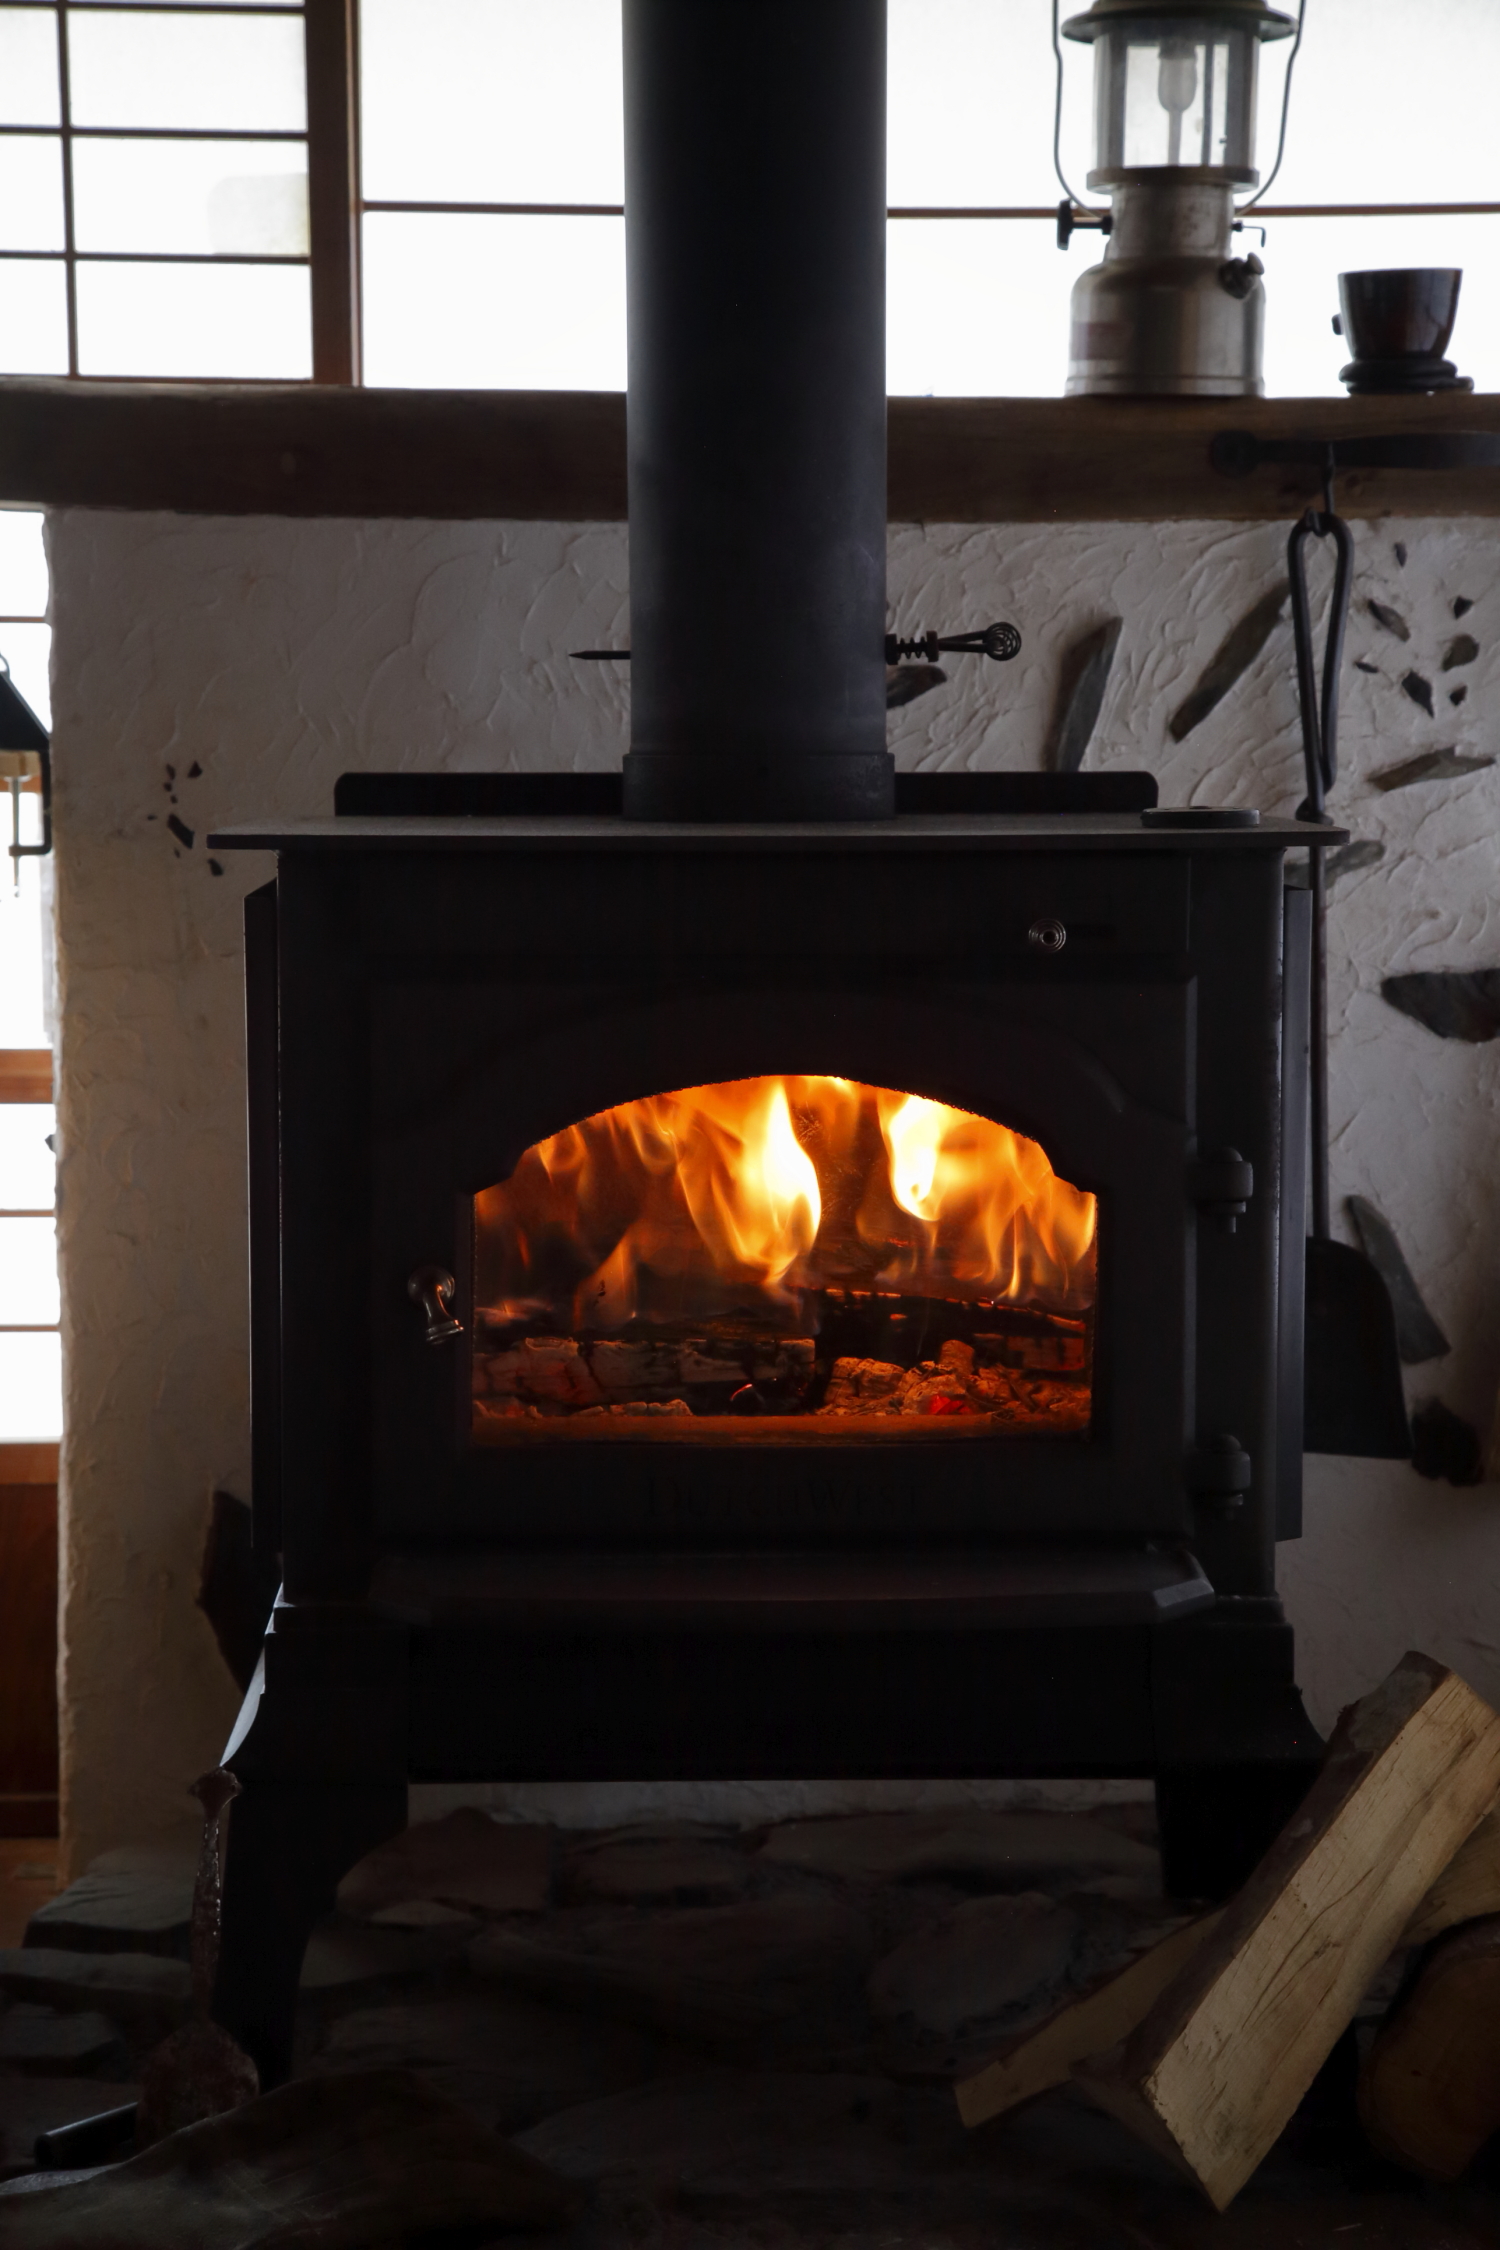 薪ストーブで冬キャンプを暖かく アウトドアでおすすめの商品を紹介 暖房器具 Be Pal キャンプ アウトドア 自然派生活の情報源ビーパル